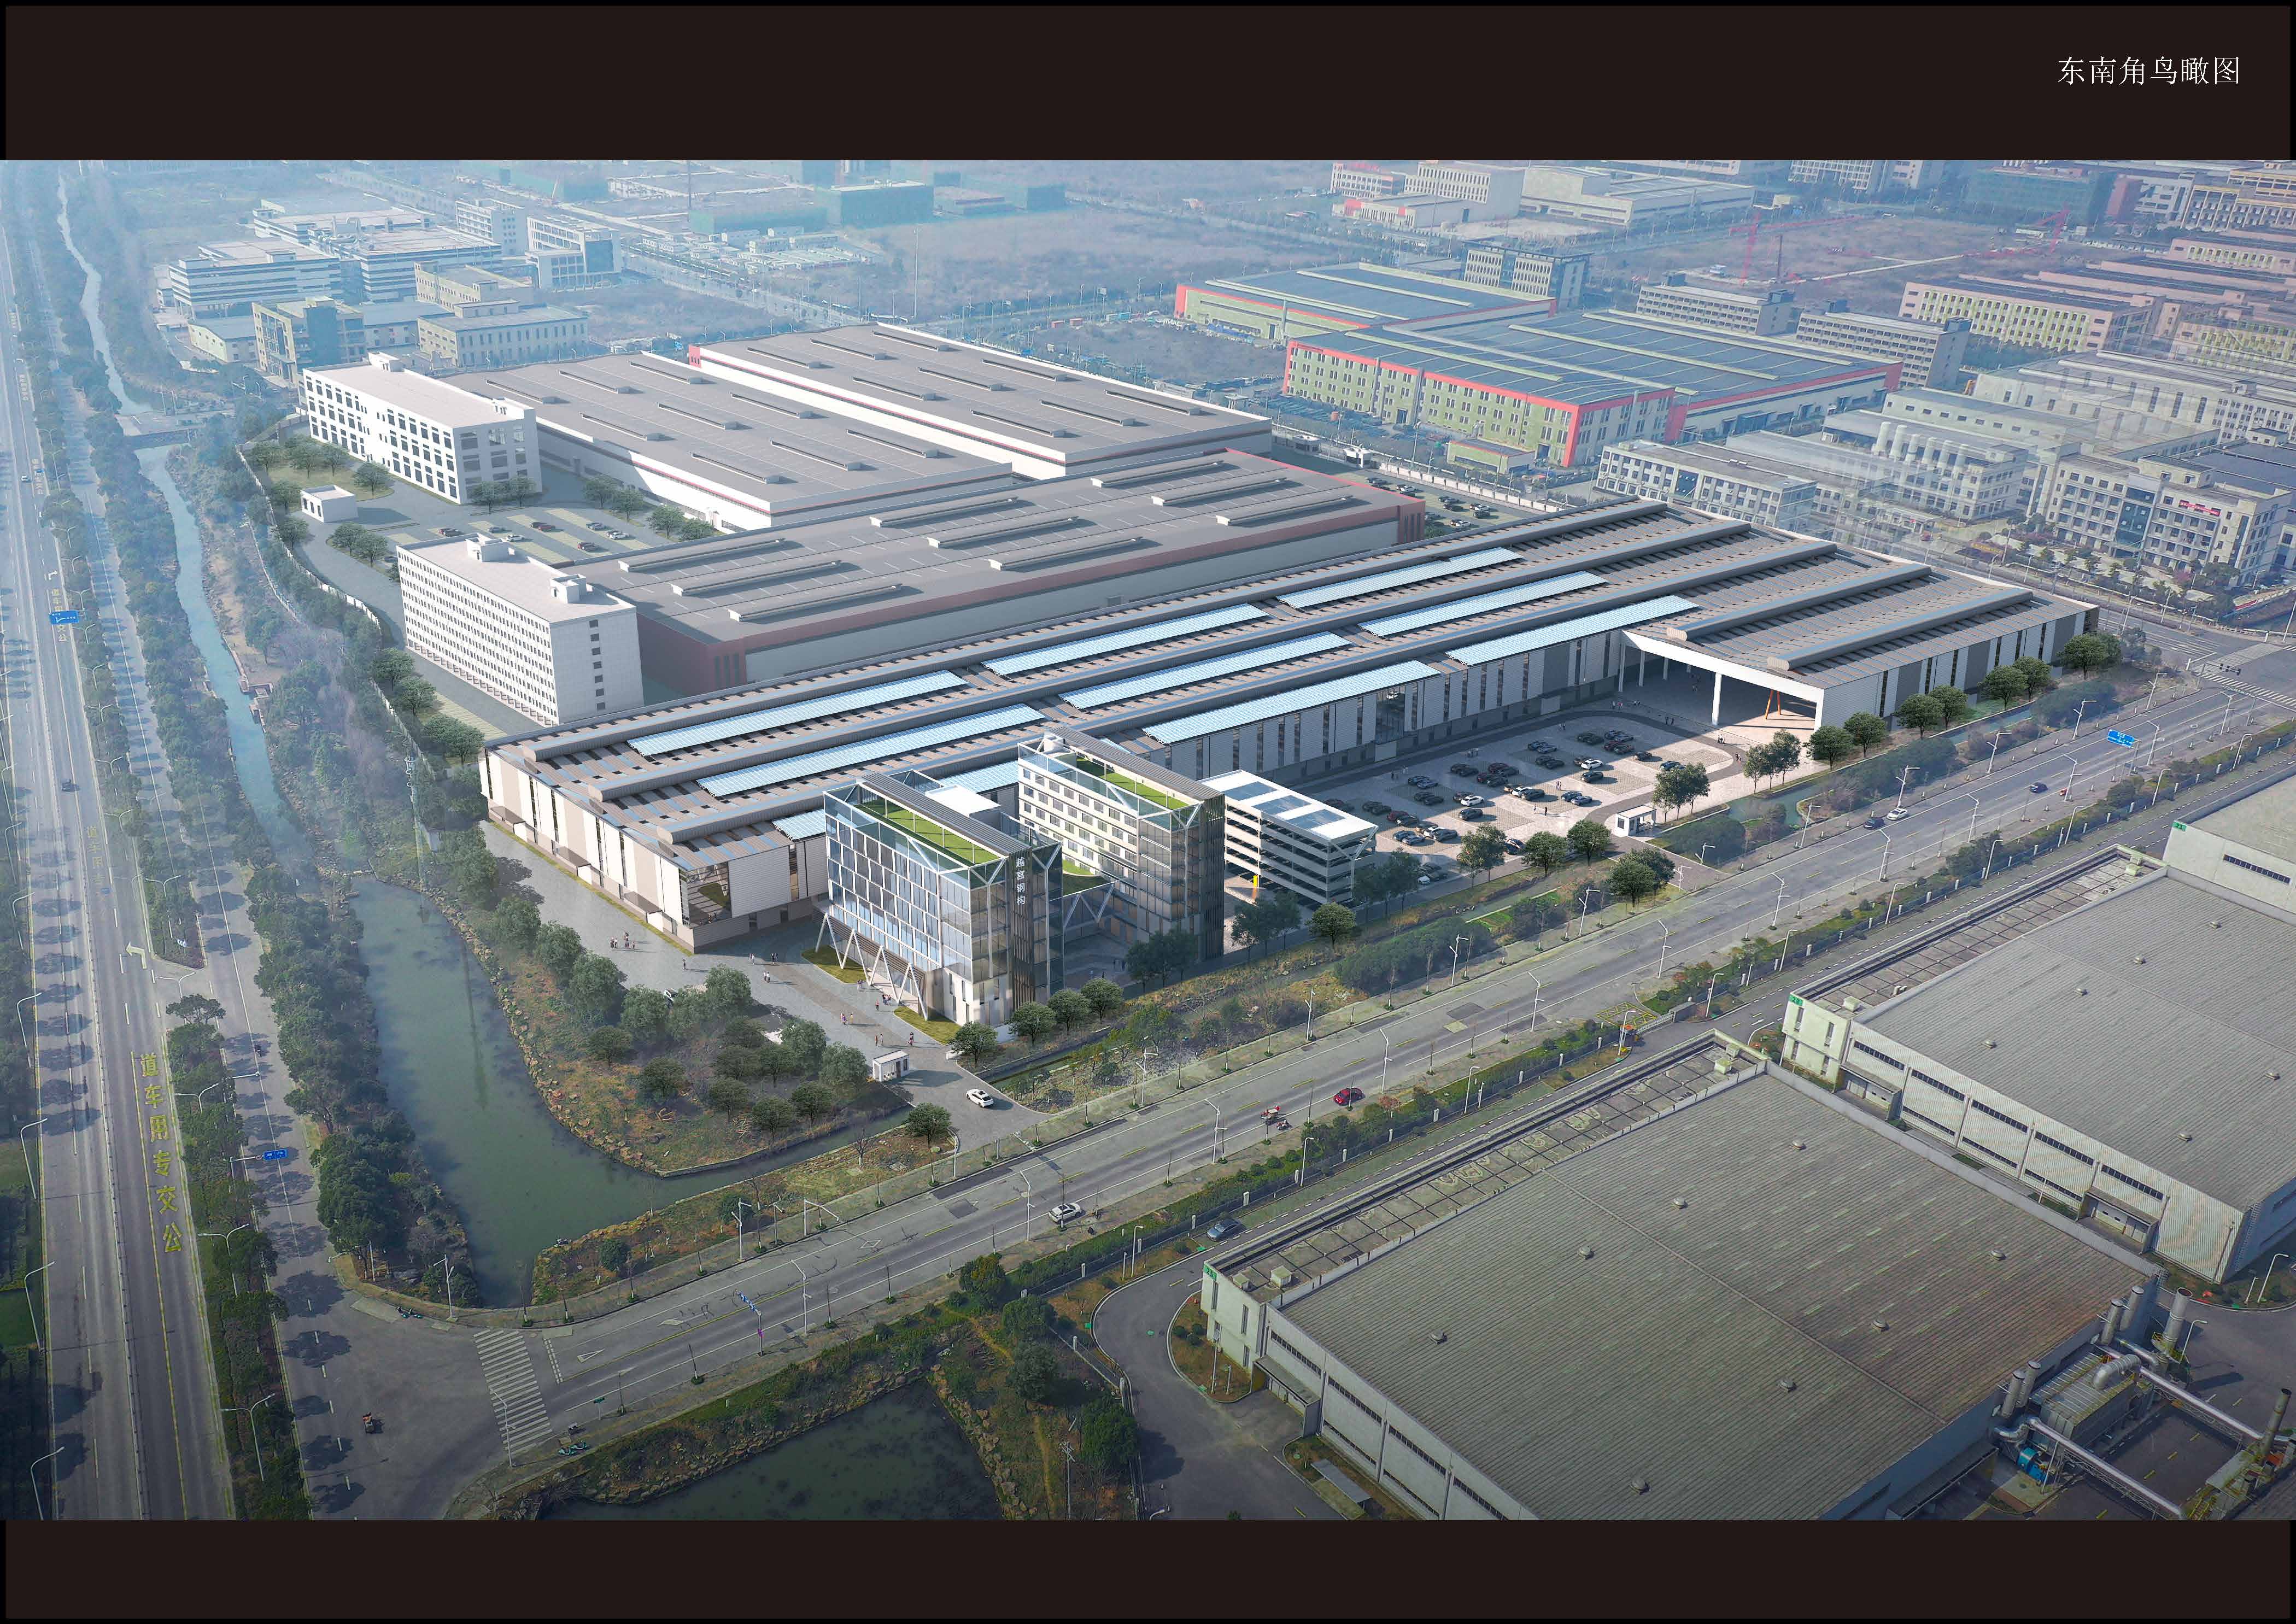 浙江越宫钢结构有限公司年产60万平方米绿色装配式钢结构建筑、1万台套智能立体停车设备项目第一次全本公示